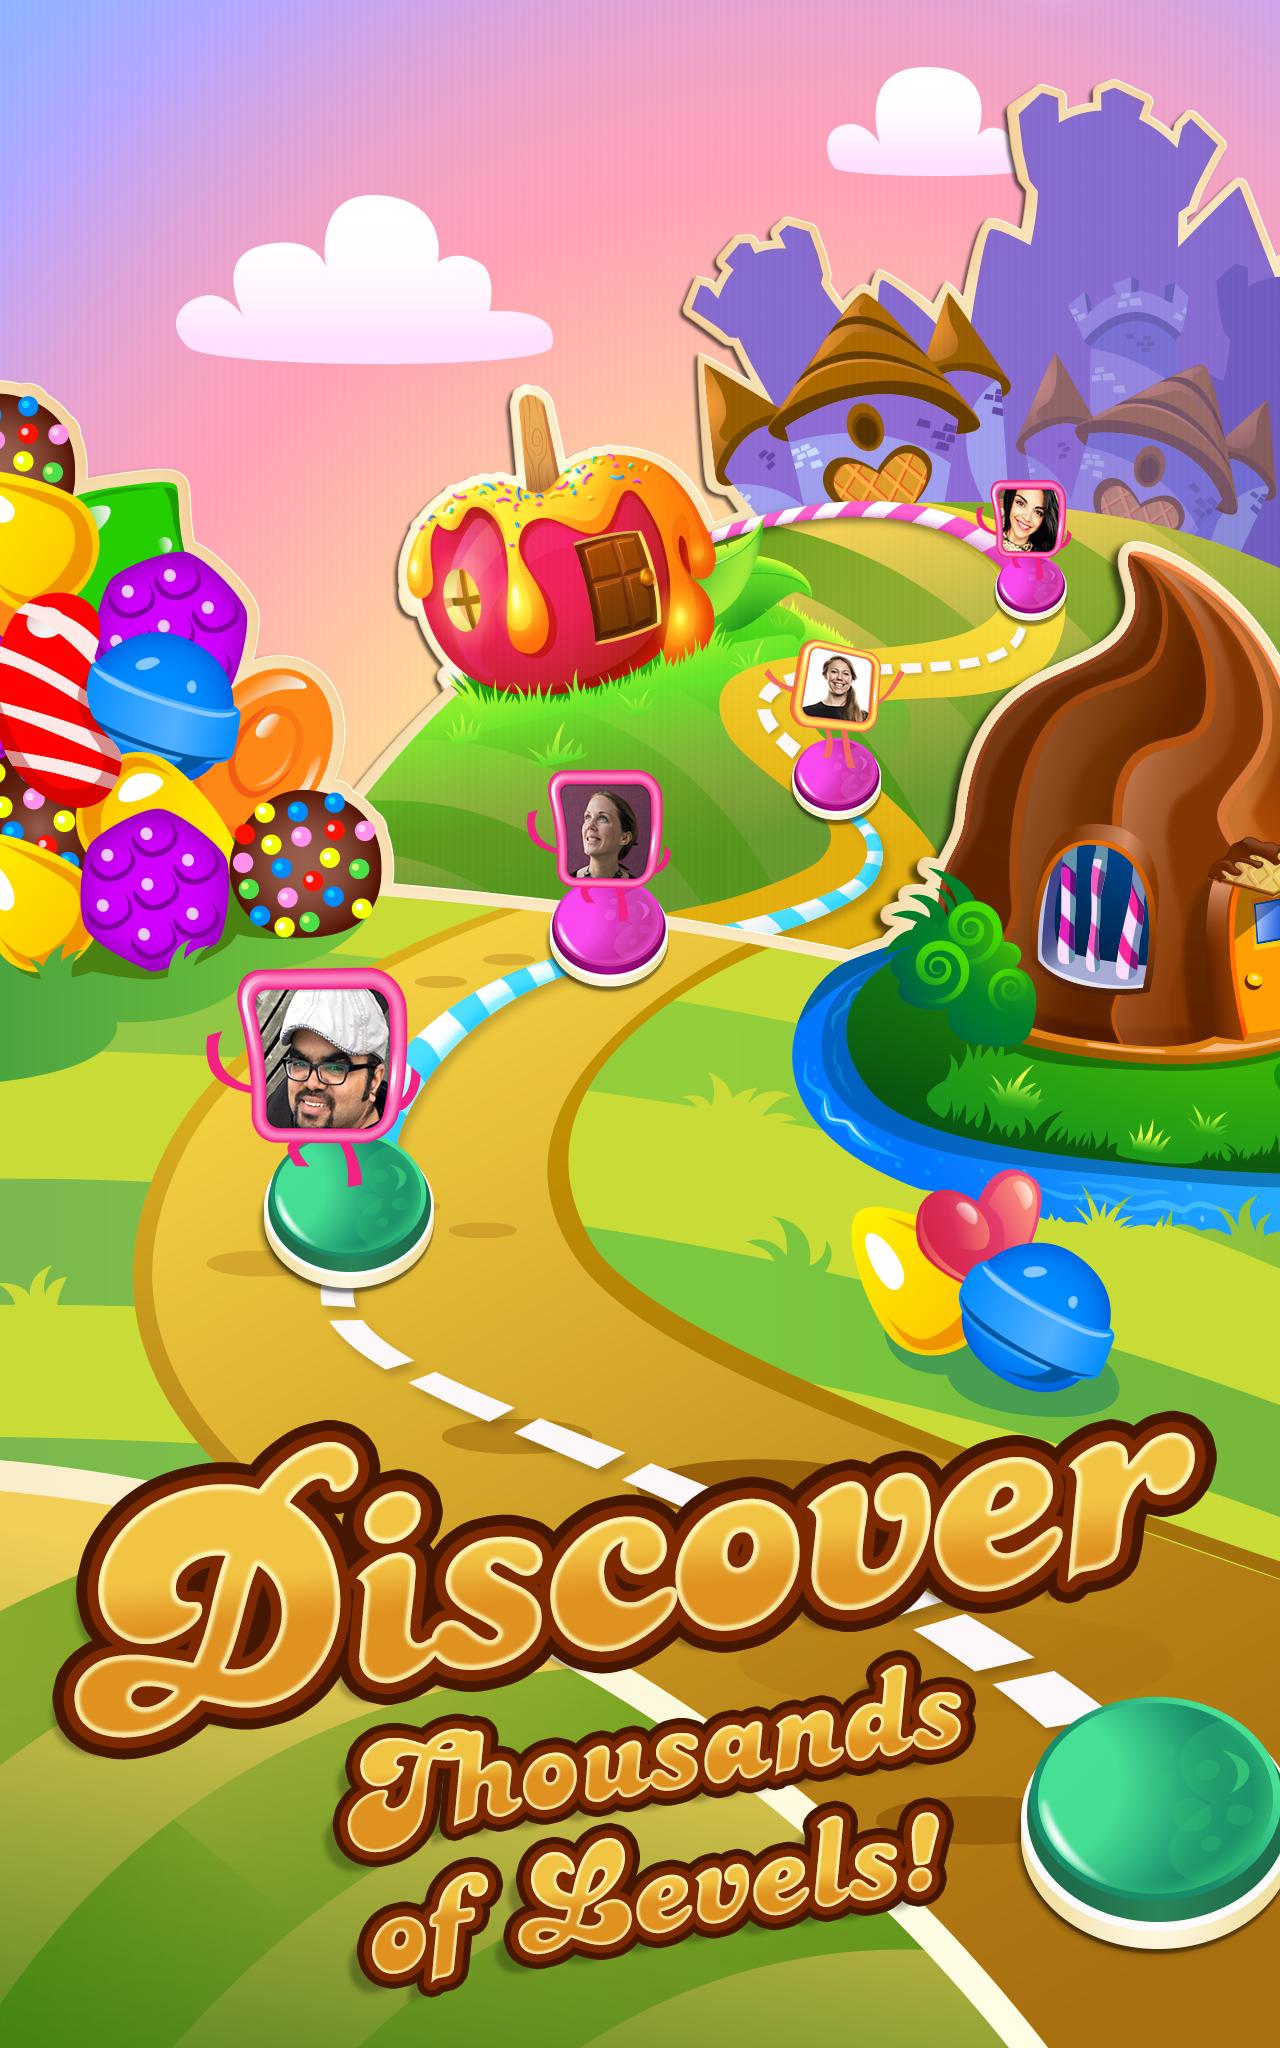 candy crush saga king game free download